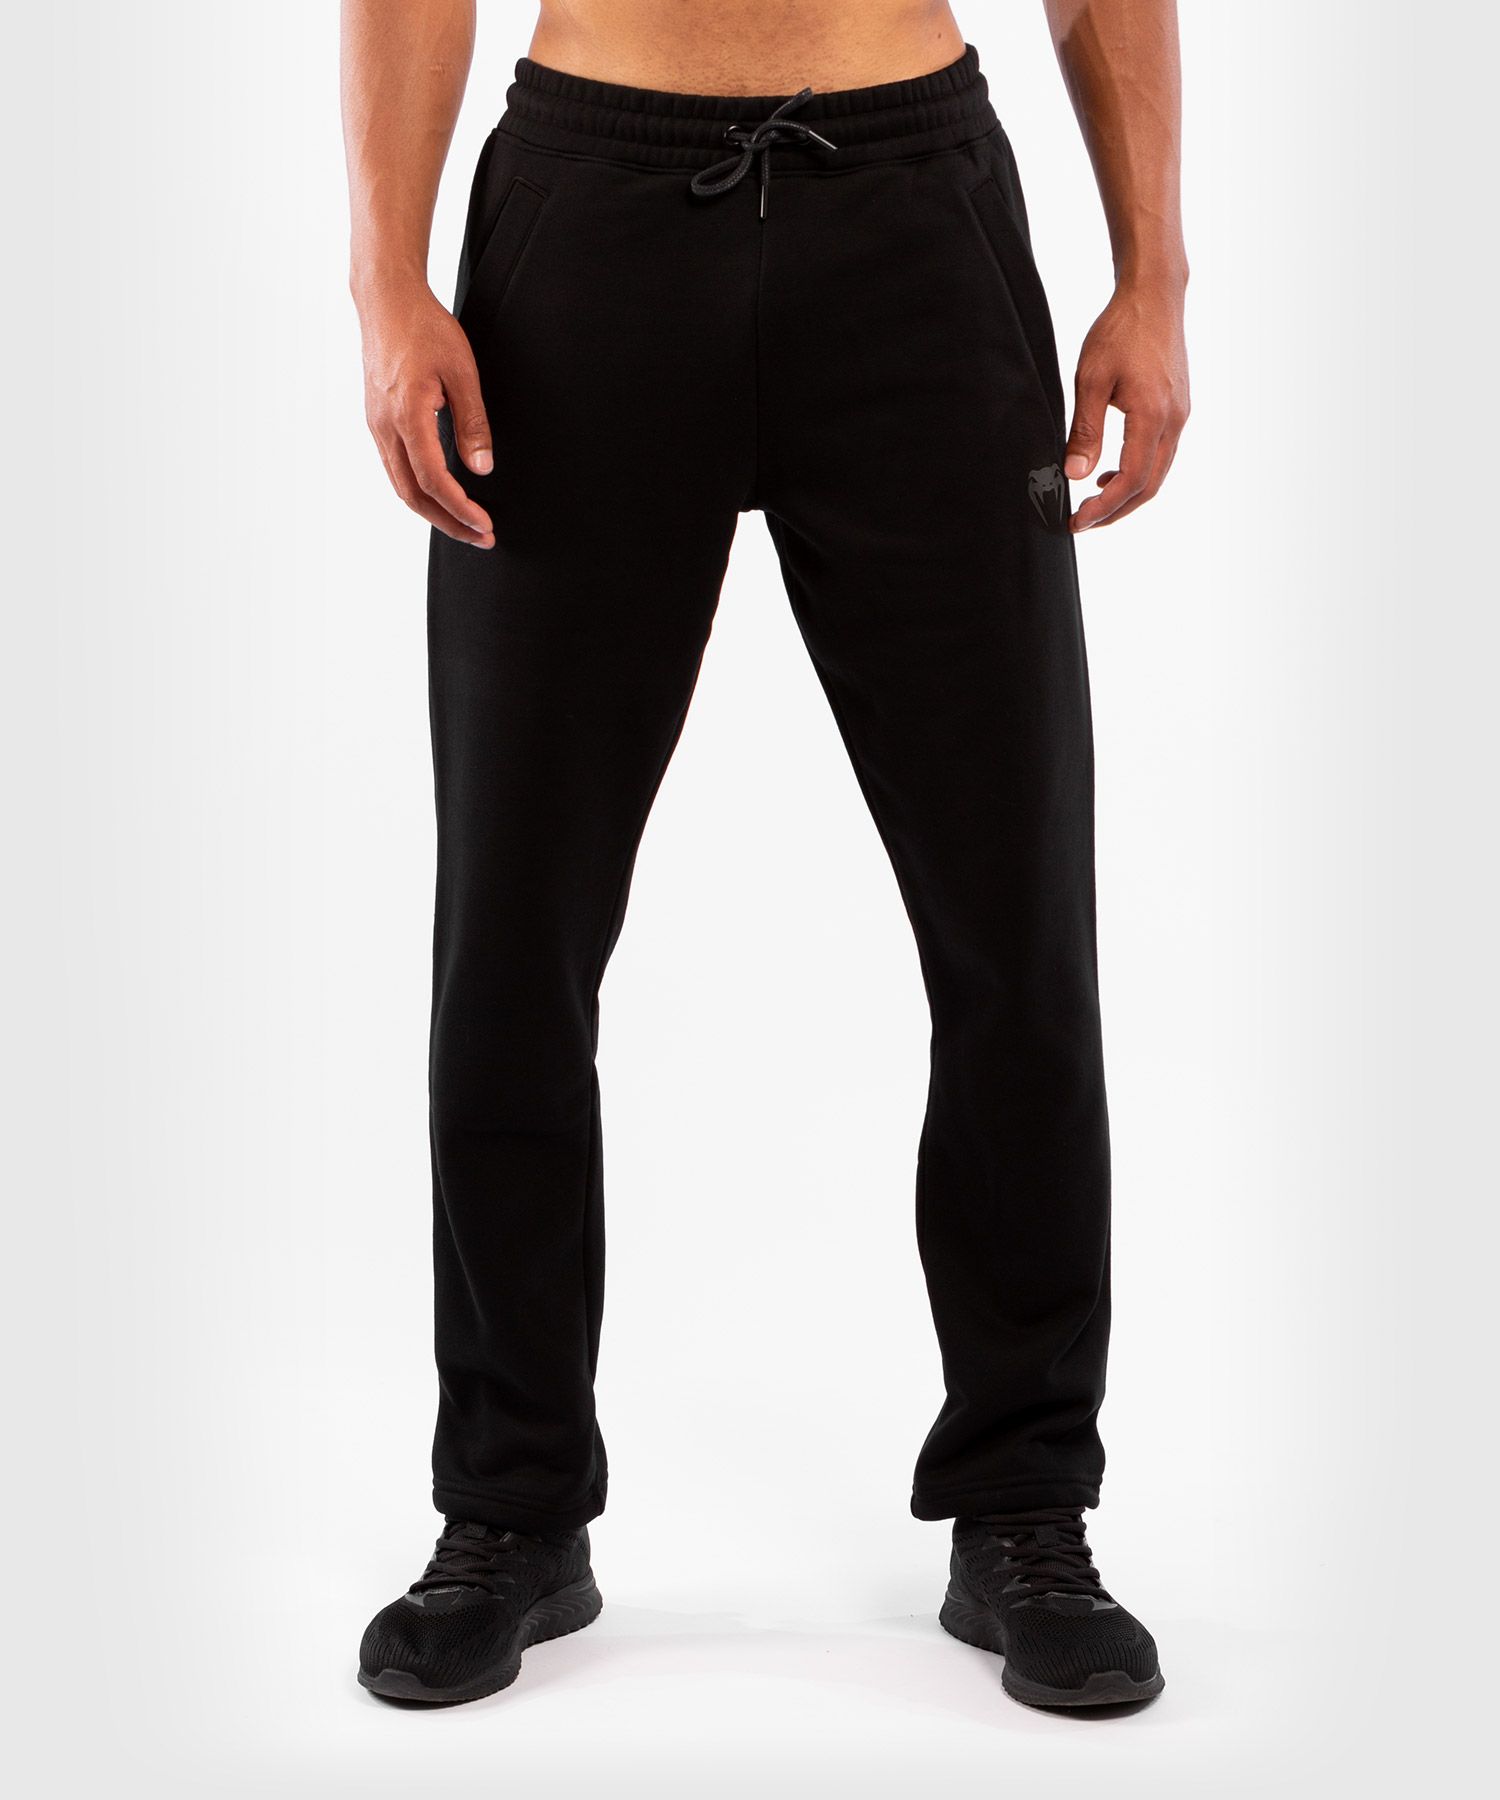 Pantalones deportivos Venum Classic - Negro/Negro